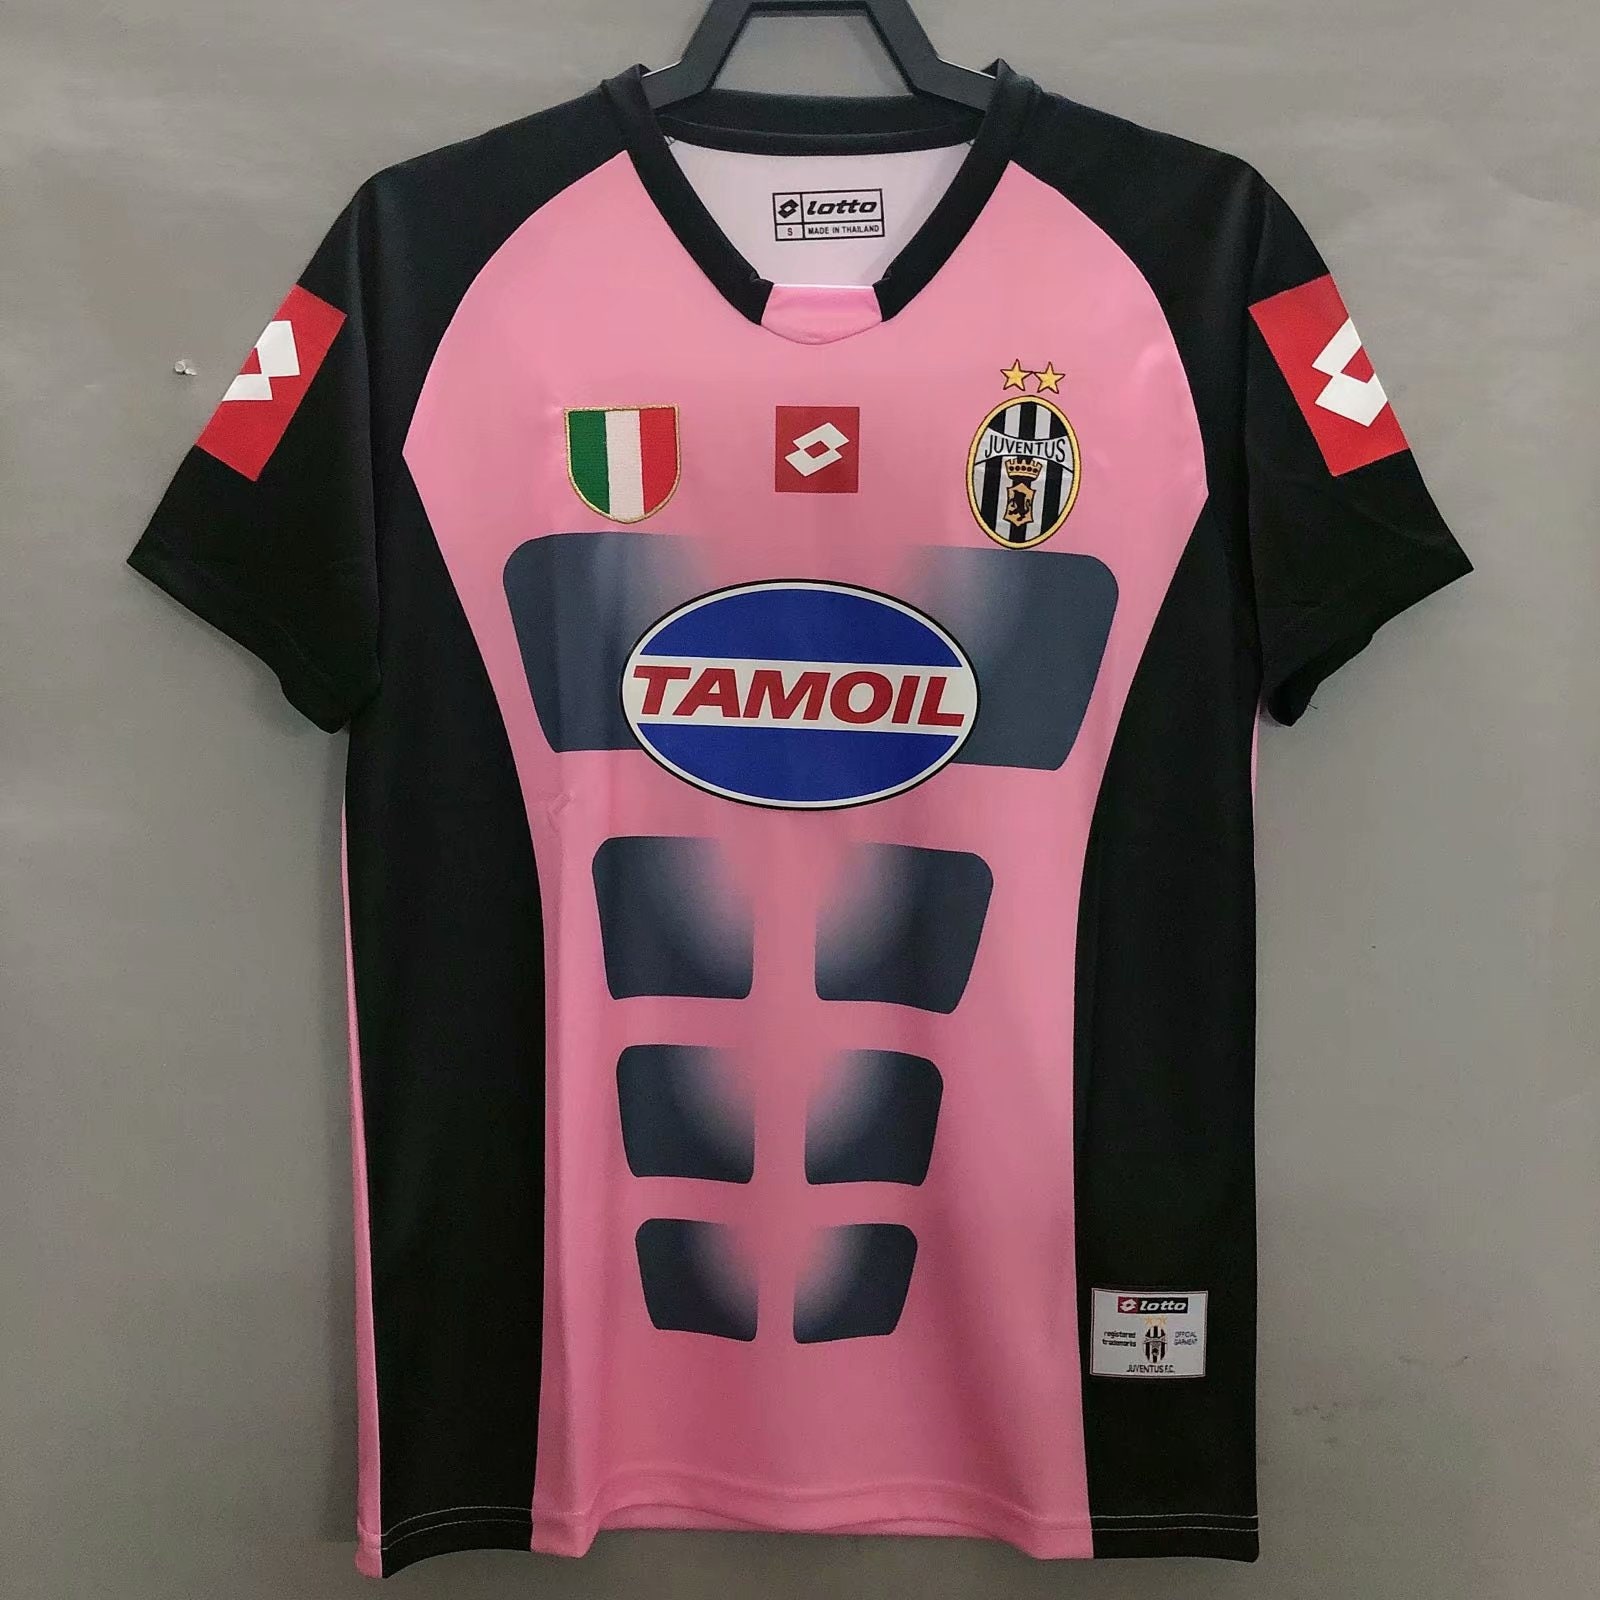 Langwerpig voorraad impliceren Juventus GK Shirt 2002-03 - Etsy